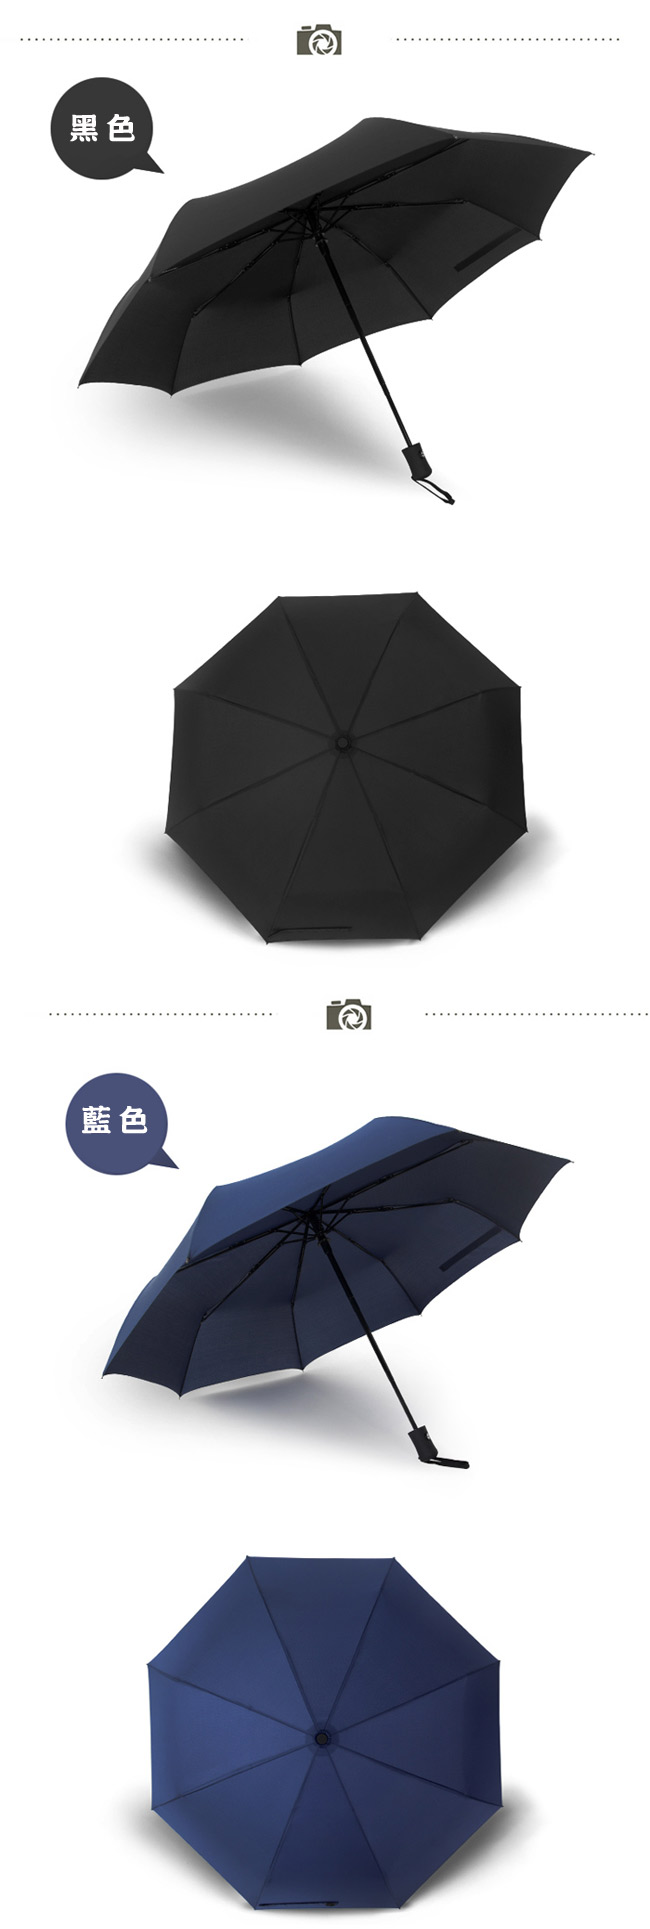 PUSH! 好聚好傘, 自動傘雨傘遮陽傘晴雨傘三摺傘I28黑色